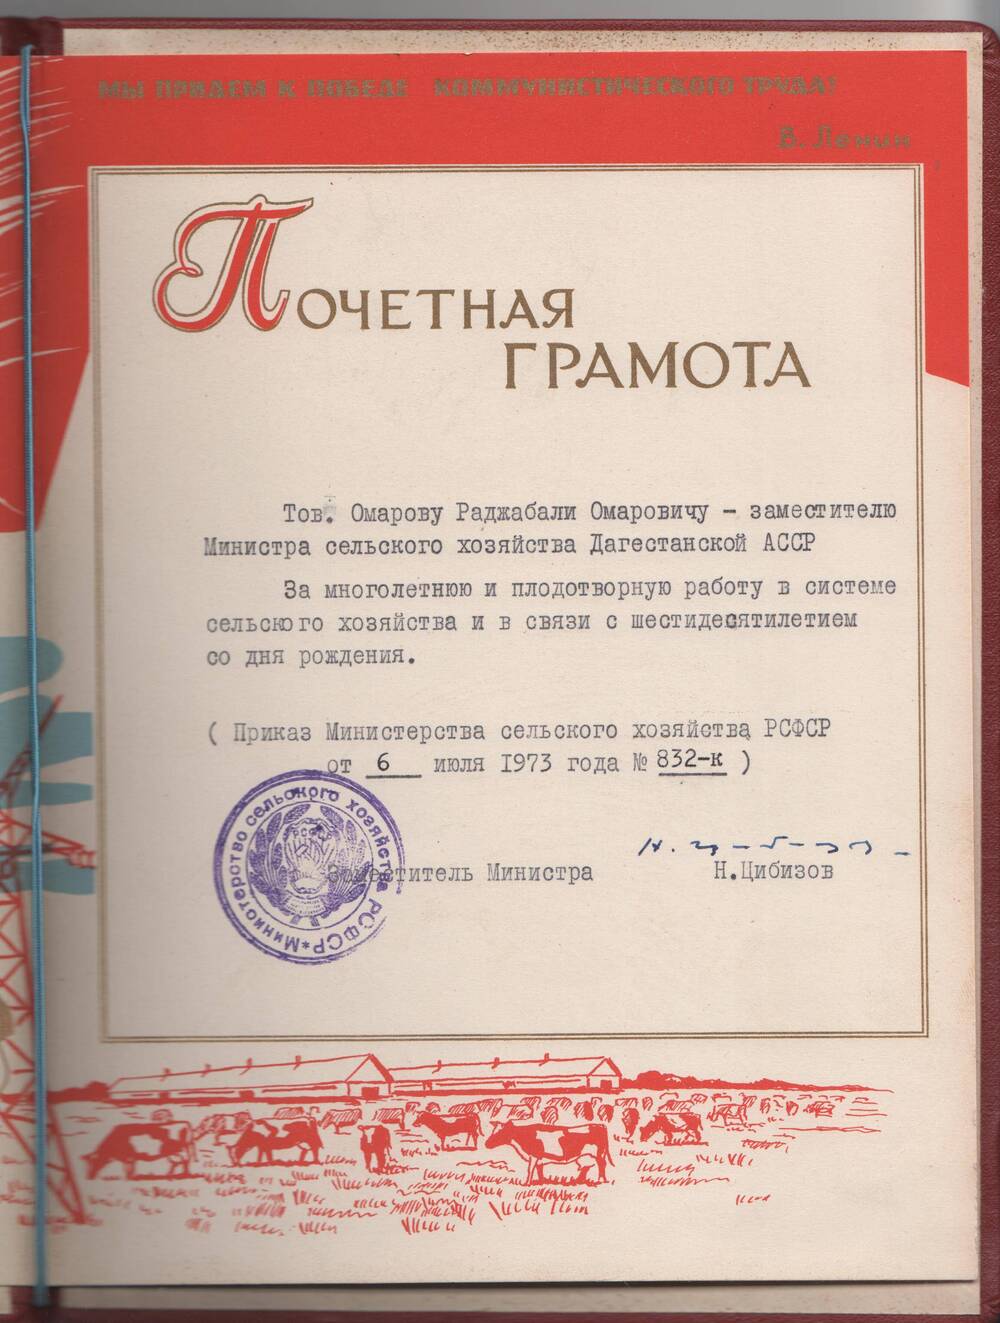 Почетная грамота Омарова Р.Д. от заместителя министра Н.Цибизова